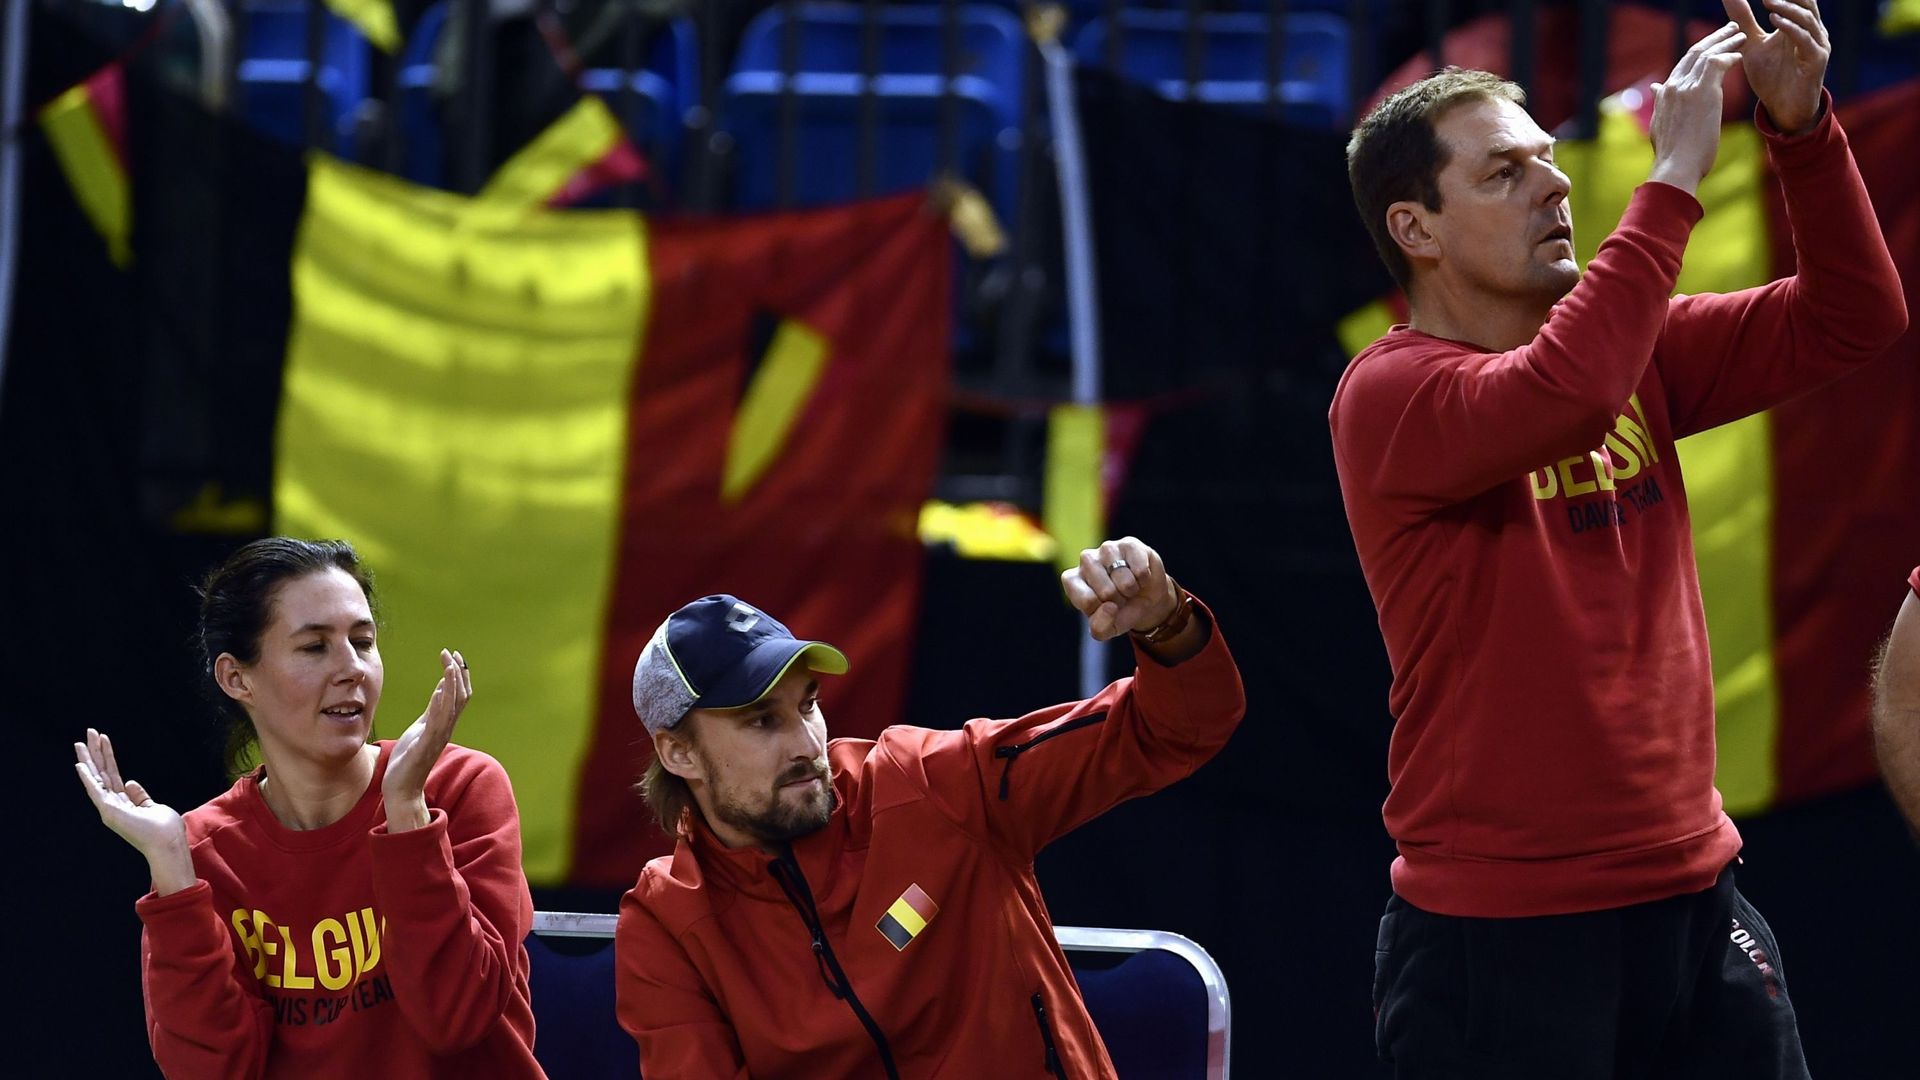 La Belgique est passée tout près de l’exploit, vendredi à Debrecen, lors de la première journée de sa rencontre des qualifications à la Coupe Davis contre la Hongrie. Malgré l’absence de David Goffin (ATP 10), elle a bien failli mener 0-2 après les deux p